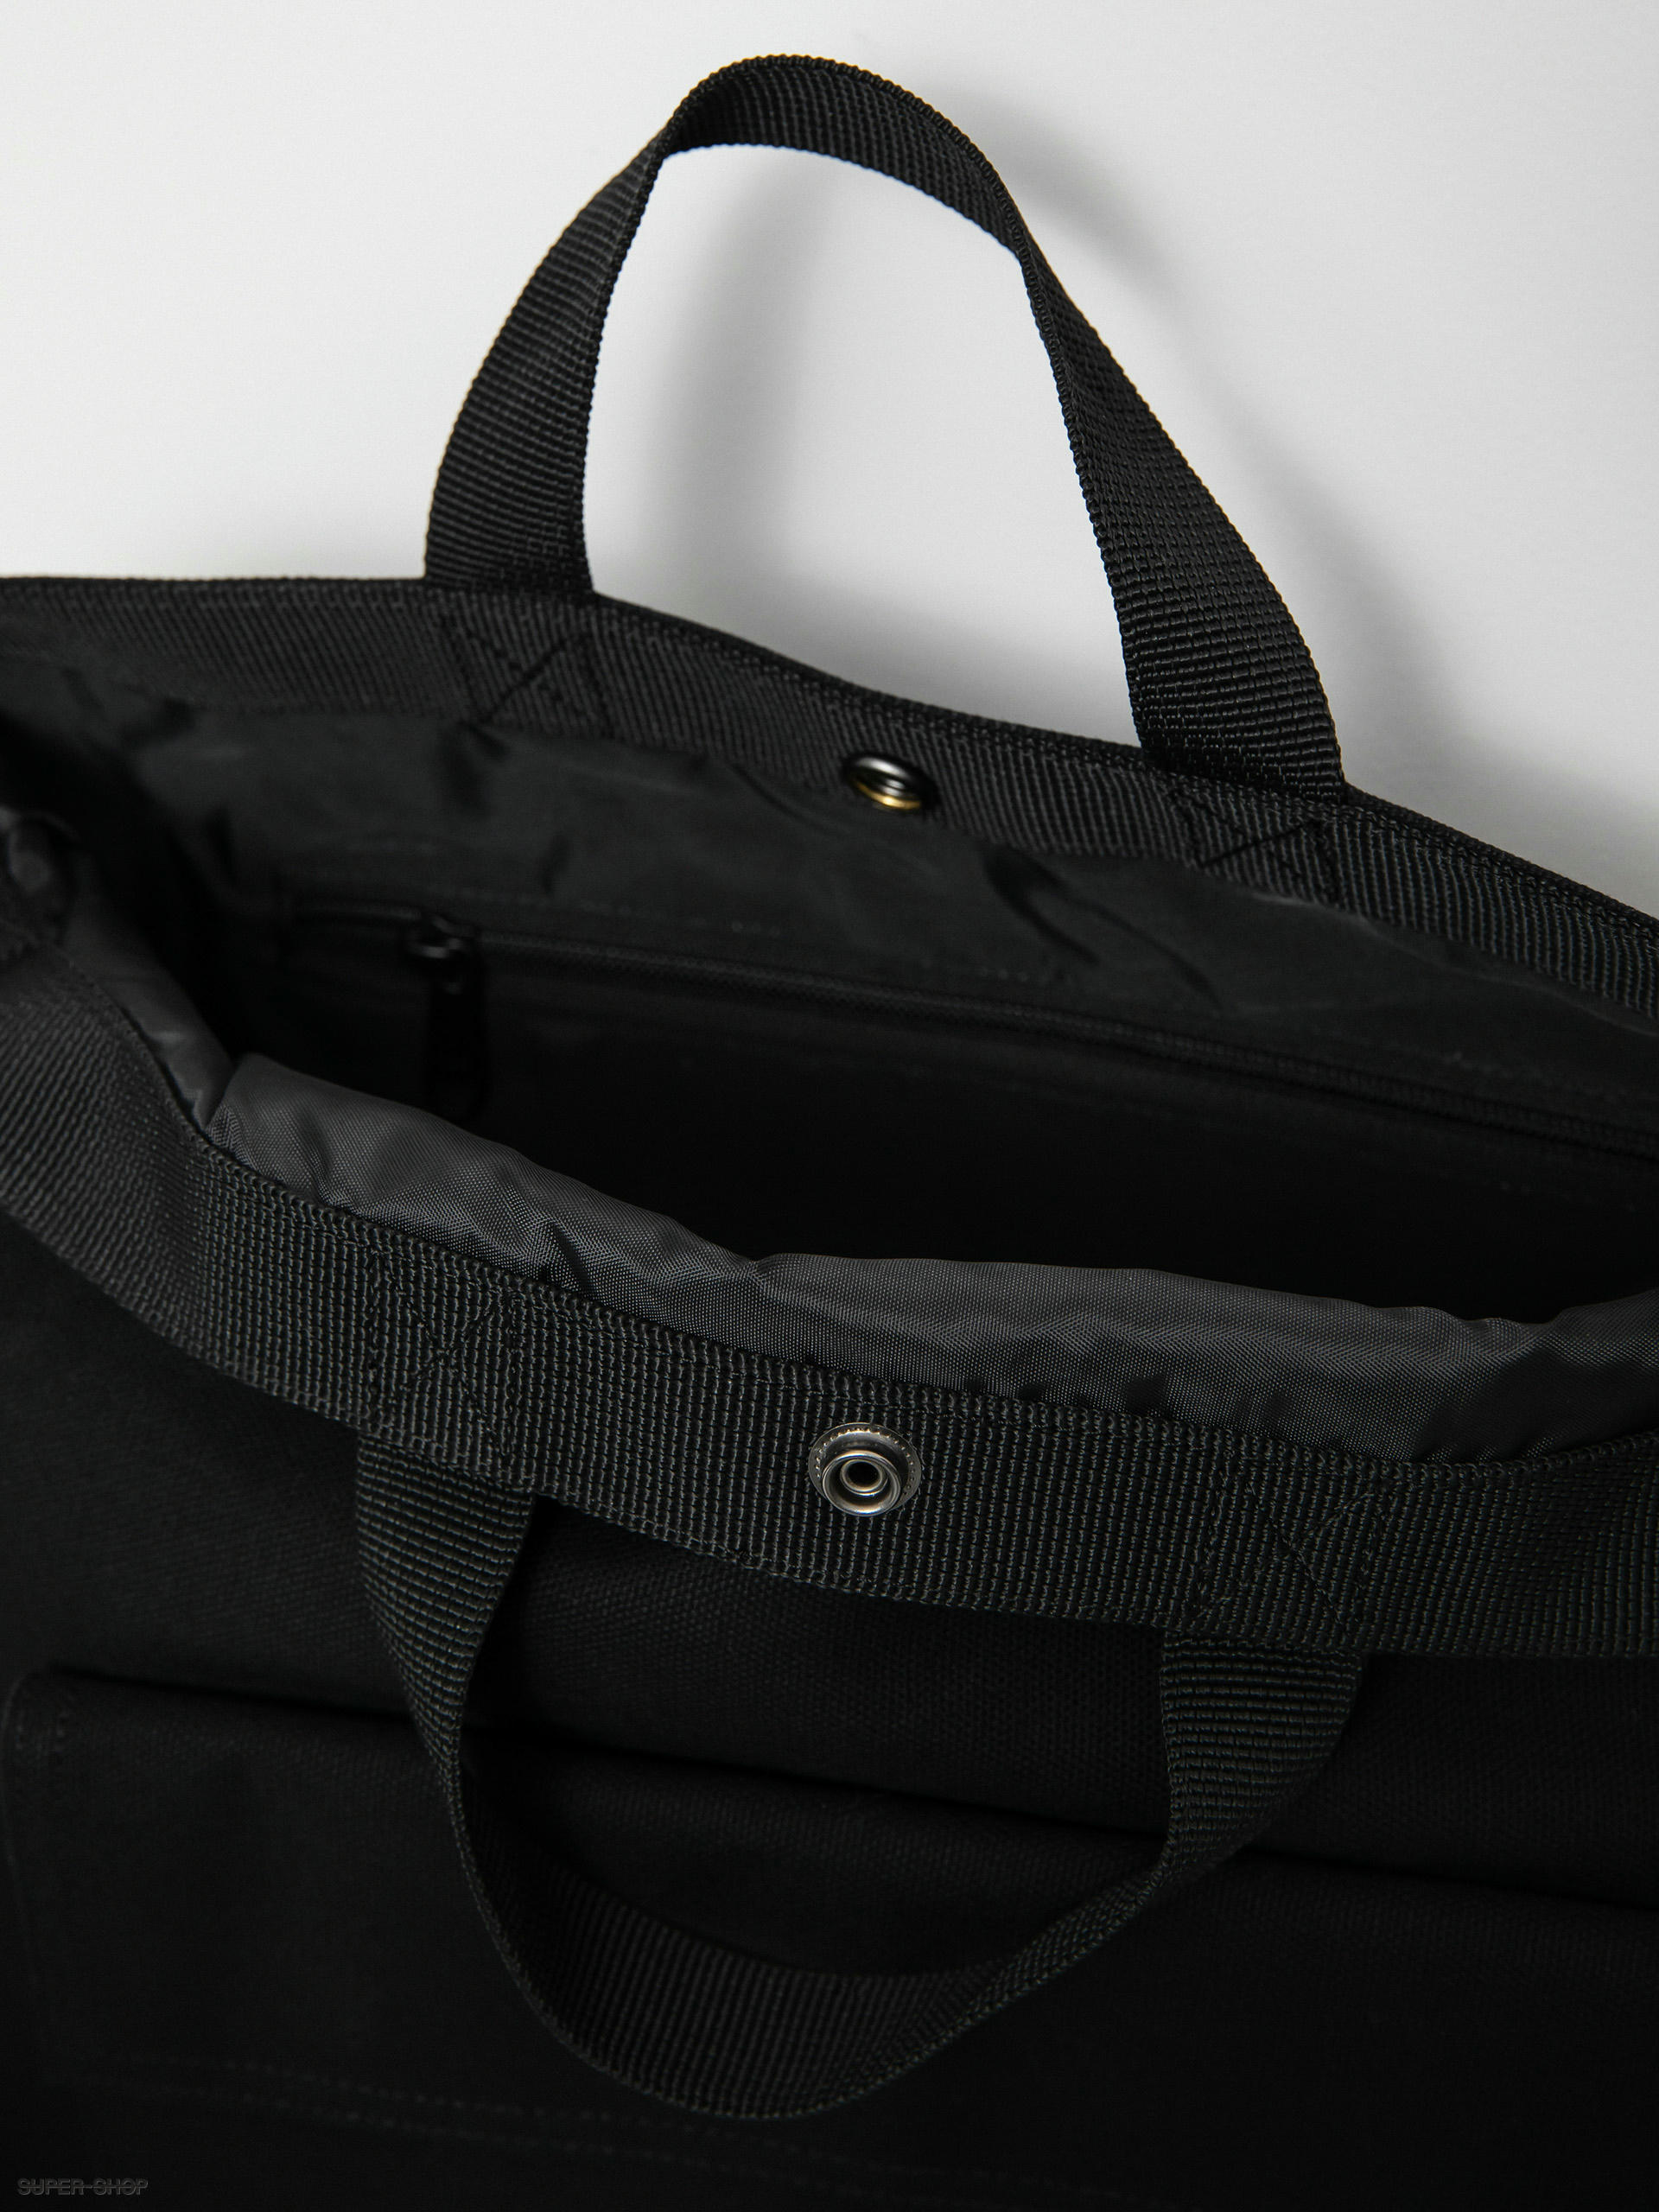 Carhartt WIP bag Dawn black color